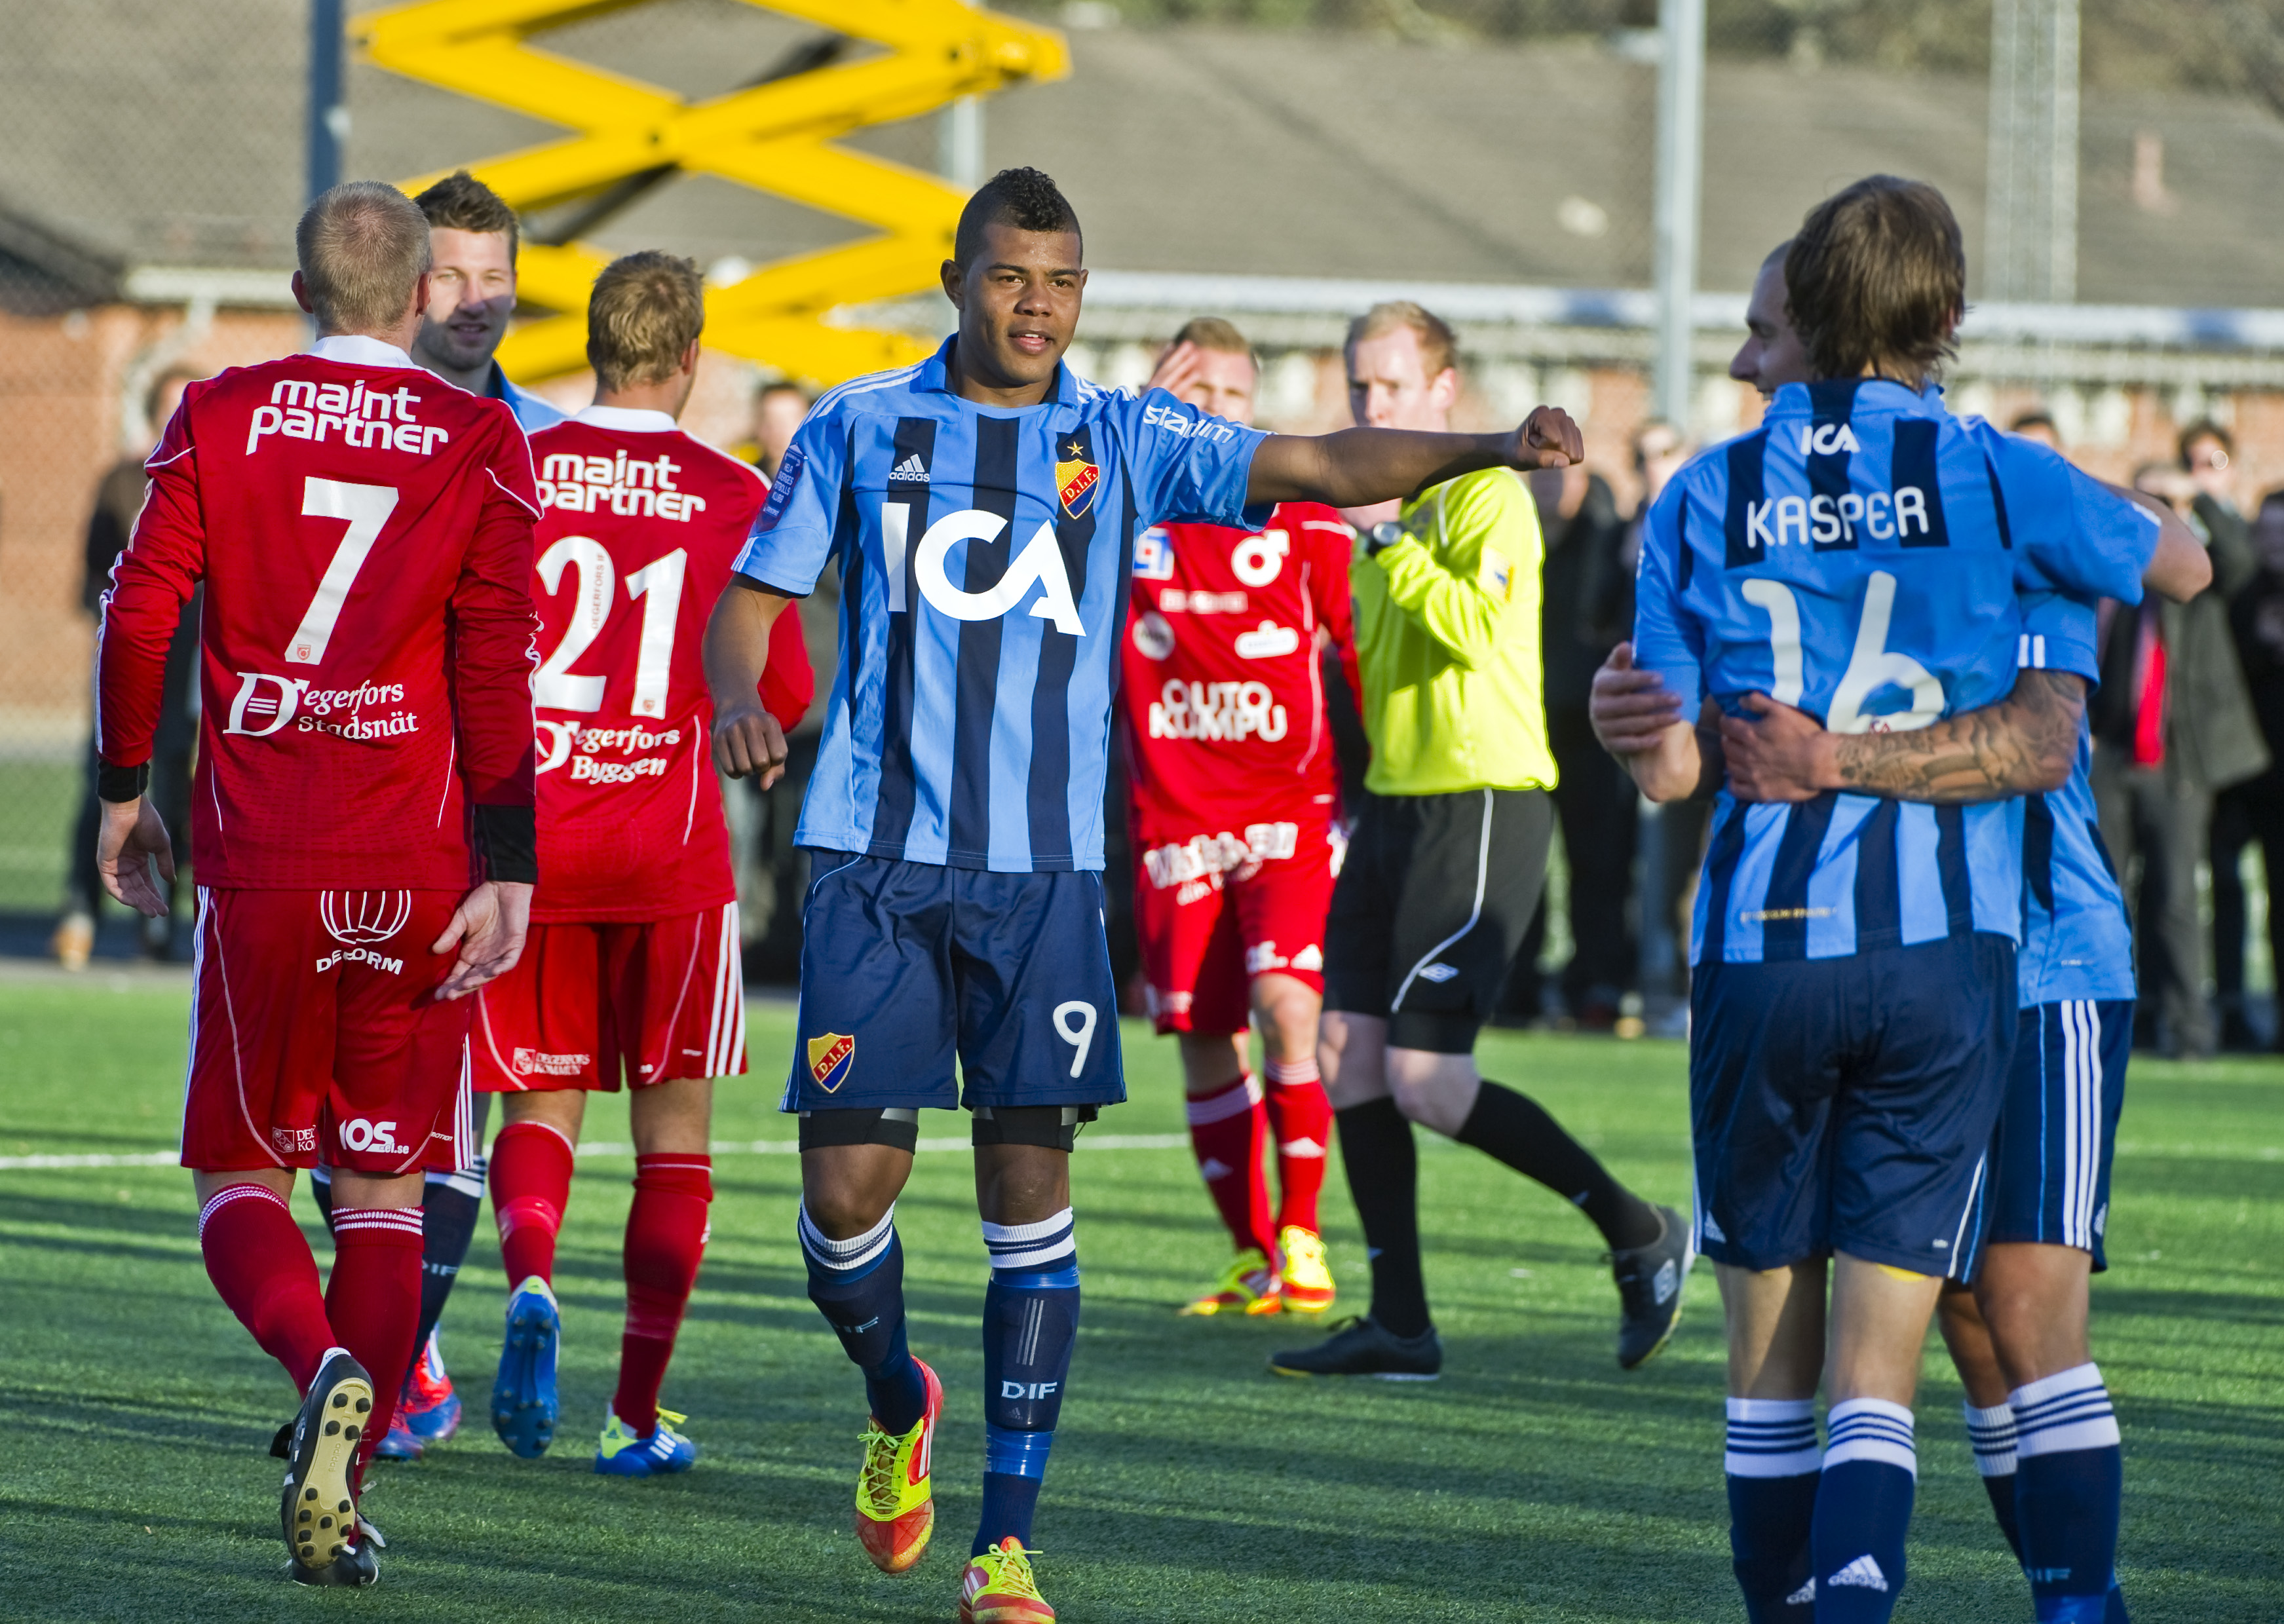 Nyheter24 tror inte att Djurgården lyckas göra en främlingslegion till ett topplag på bara en säsong.